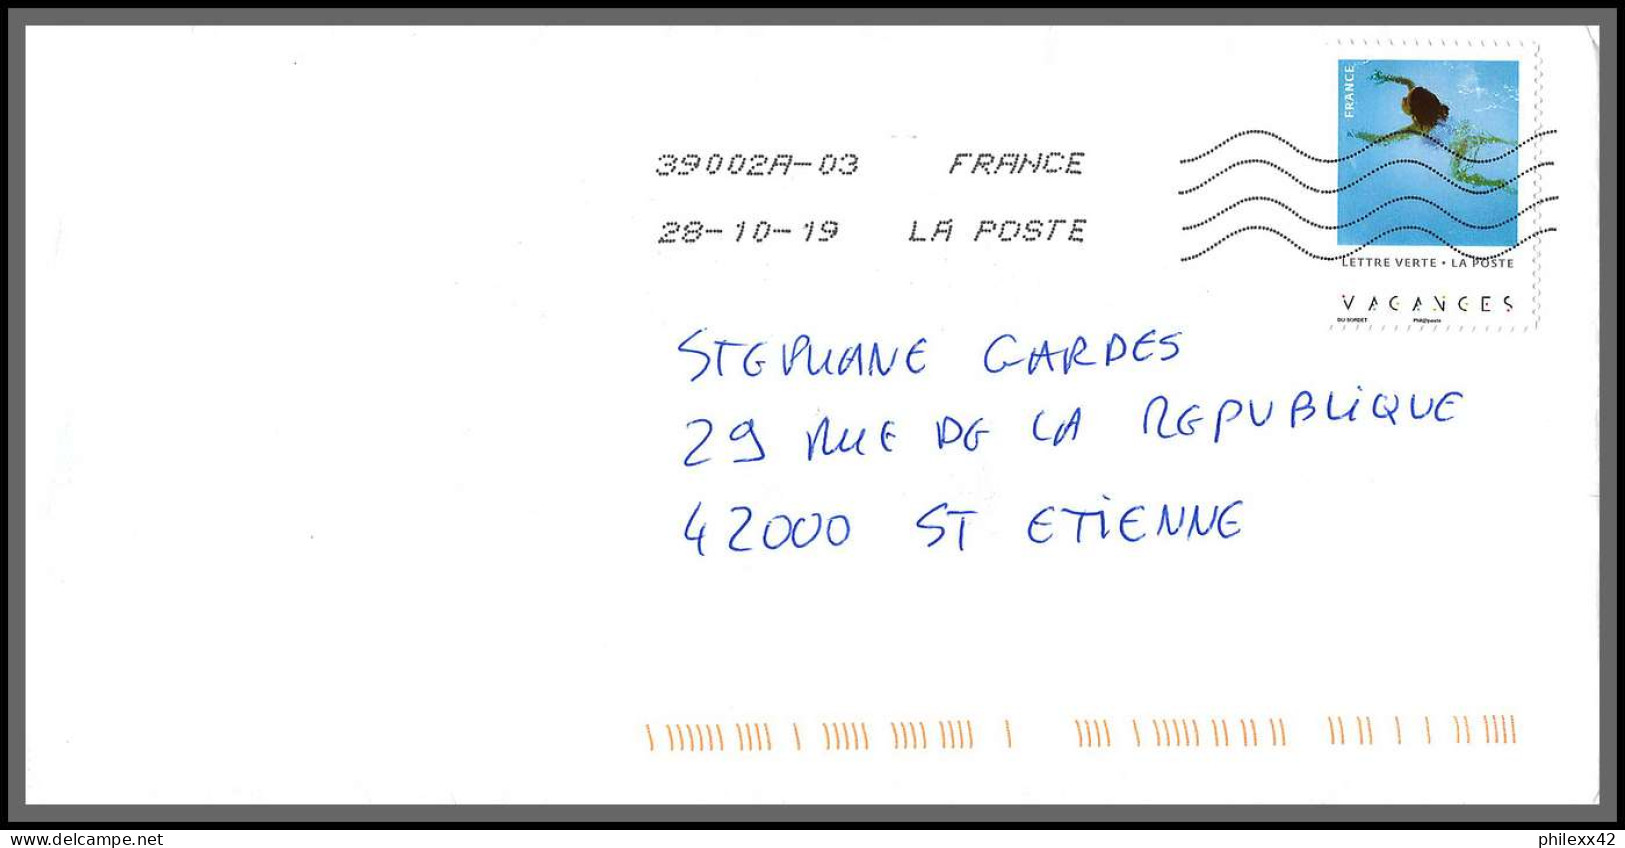 95734 - lot de 16 courriers lettres enveloppes de l'année 2019 divers affranchissements en EUROS